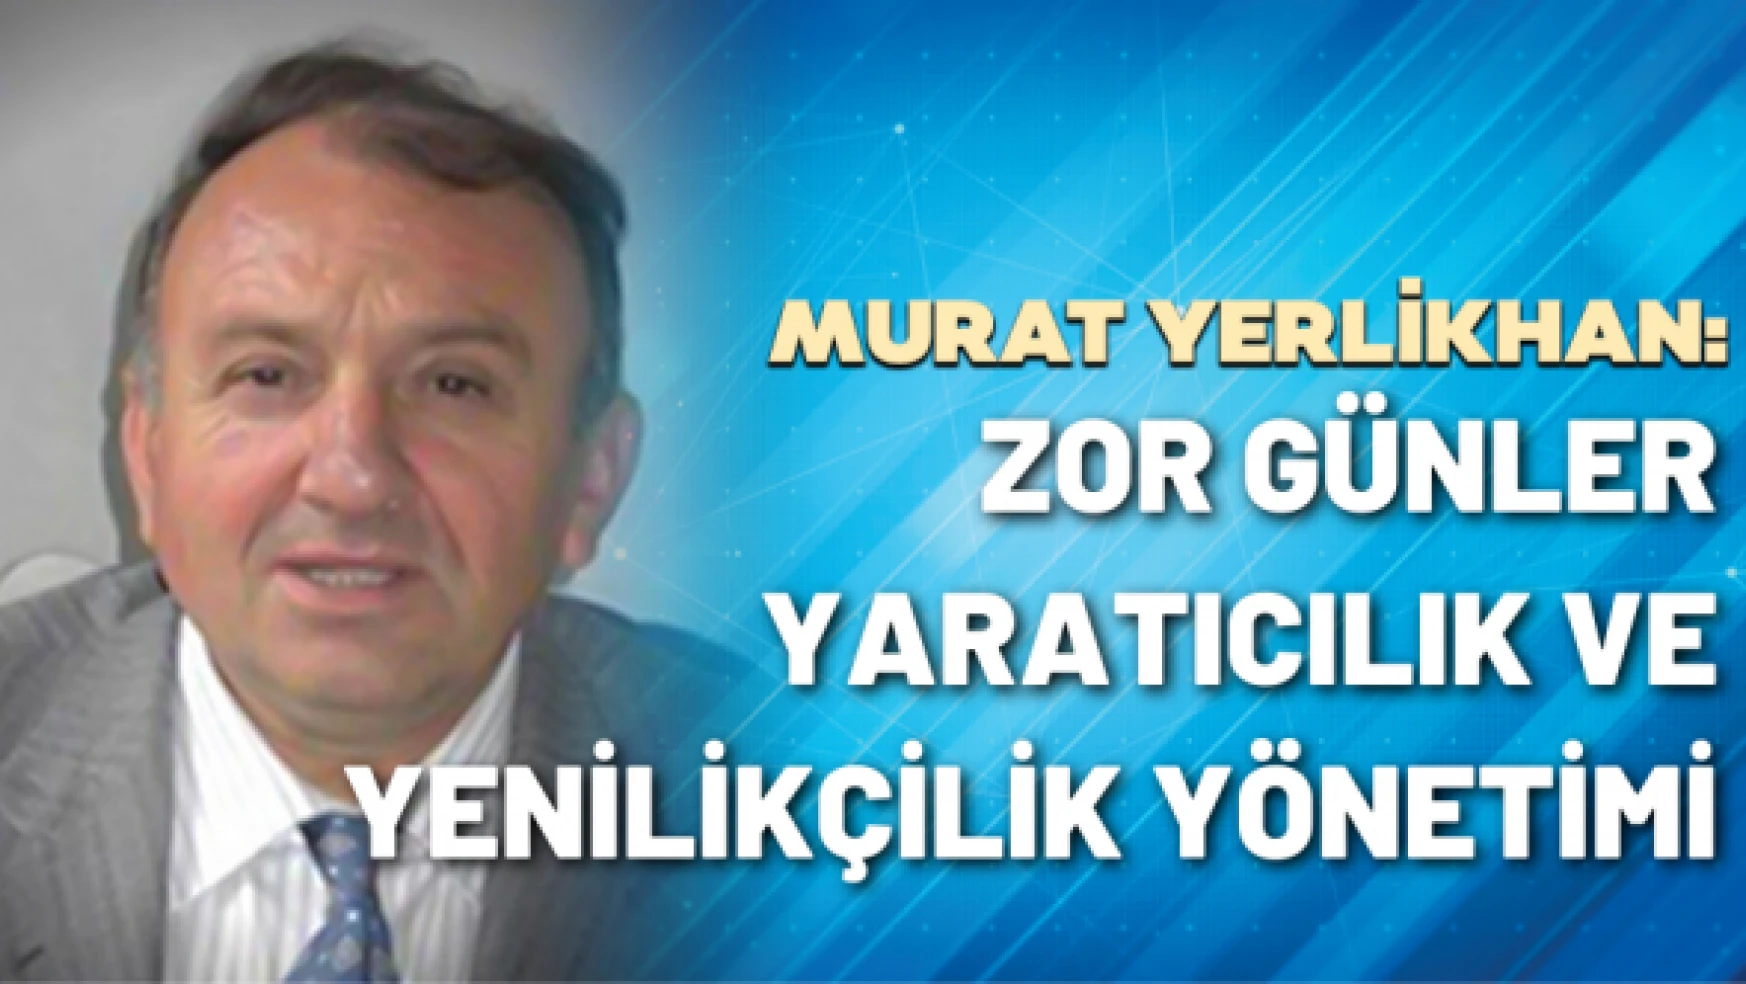 KOBİ Danışmanı Murat Yerlikhan yazdı: Zor günler, yaratıcılık ve yenilikçilik yönetimi